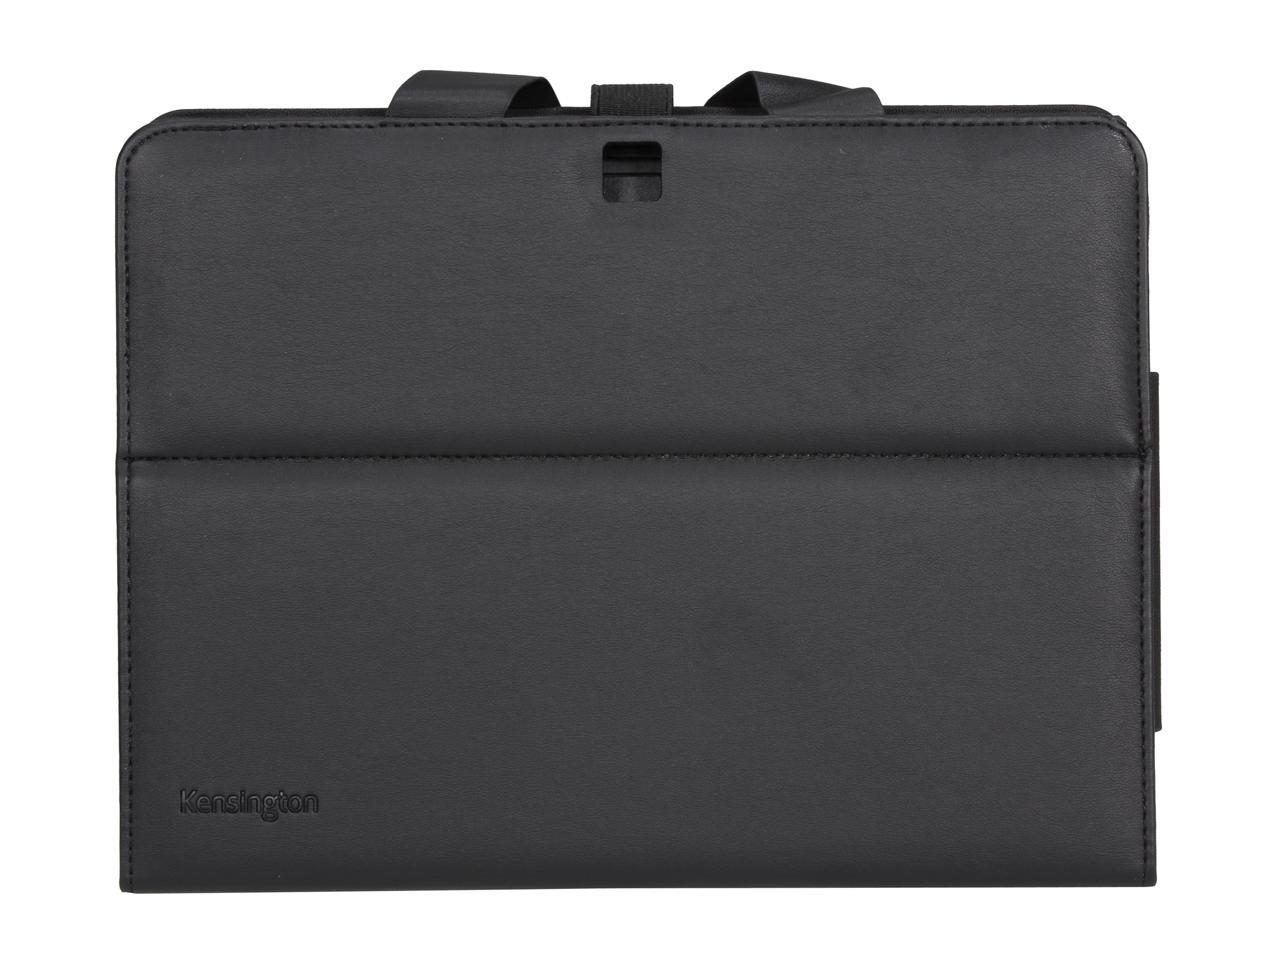 Kensington Black KeyFolio Pro - Folio with Keyboard for Samsung Galaxy Tab 3 10.1 Model K97156US